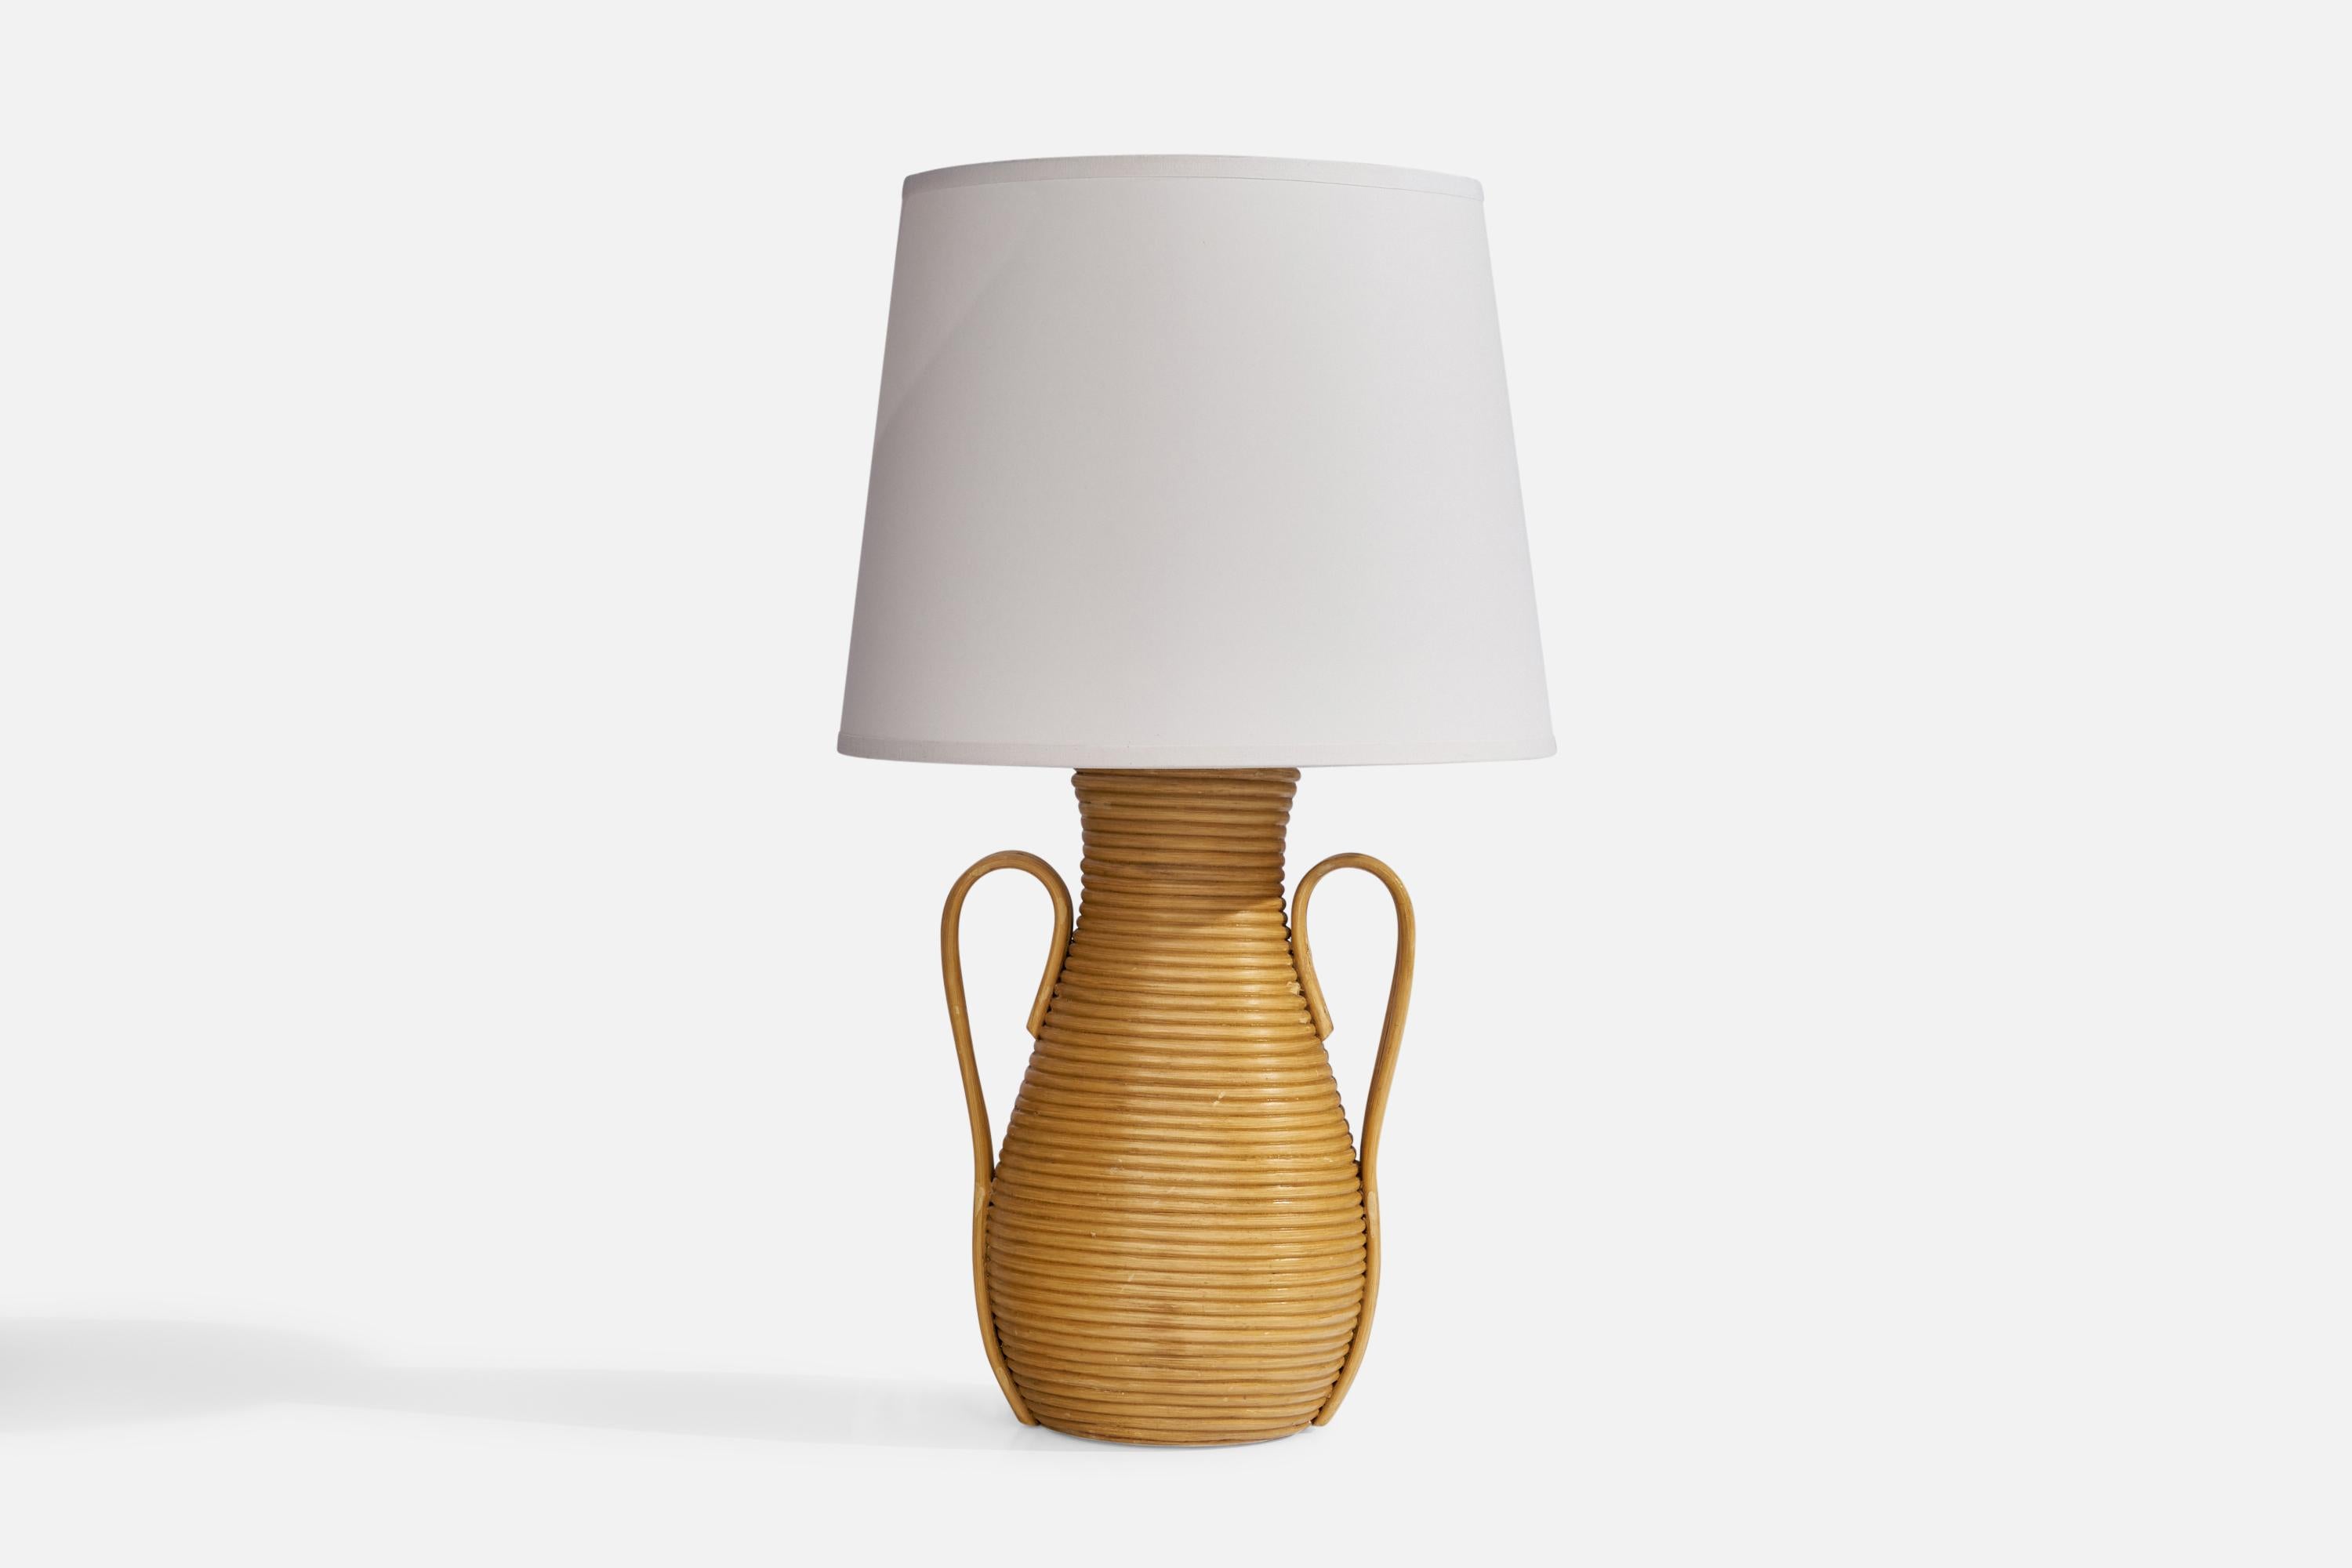 Lampe de table en rotin ou en roseau conçue et produite par Markslöjd, Suède, c. années 1980.

Dimensions de la lampe (pouces) : 12.25